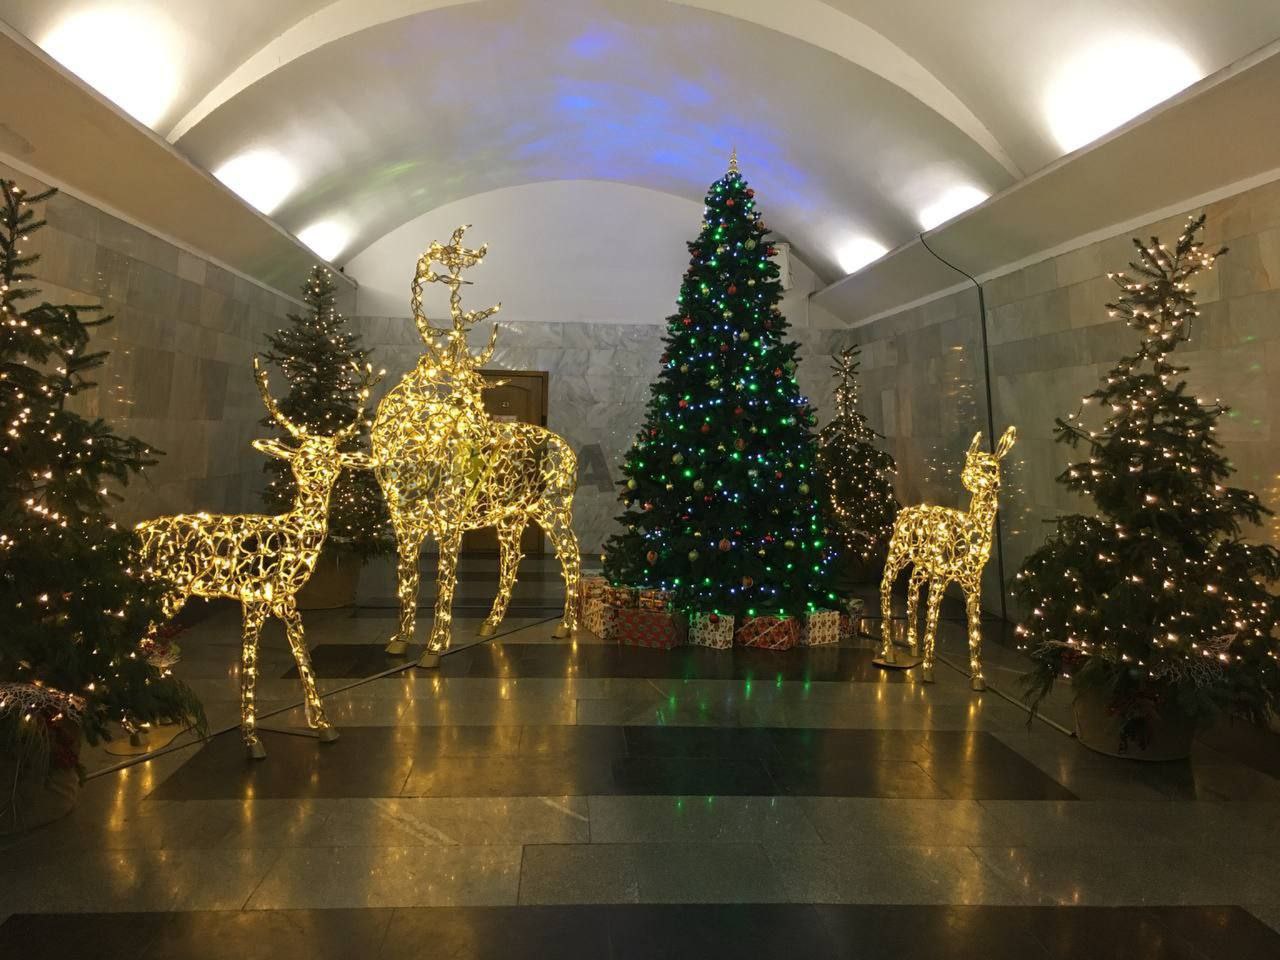 Ще одну станцію метро у Харкові прикрасили до Нового року